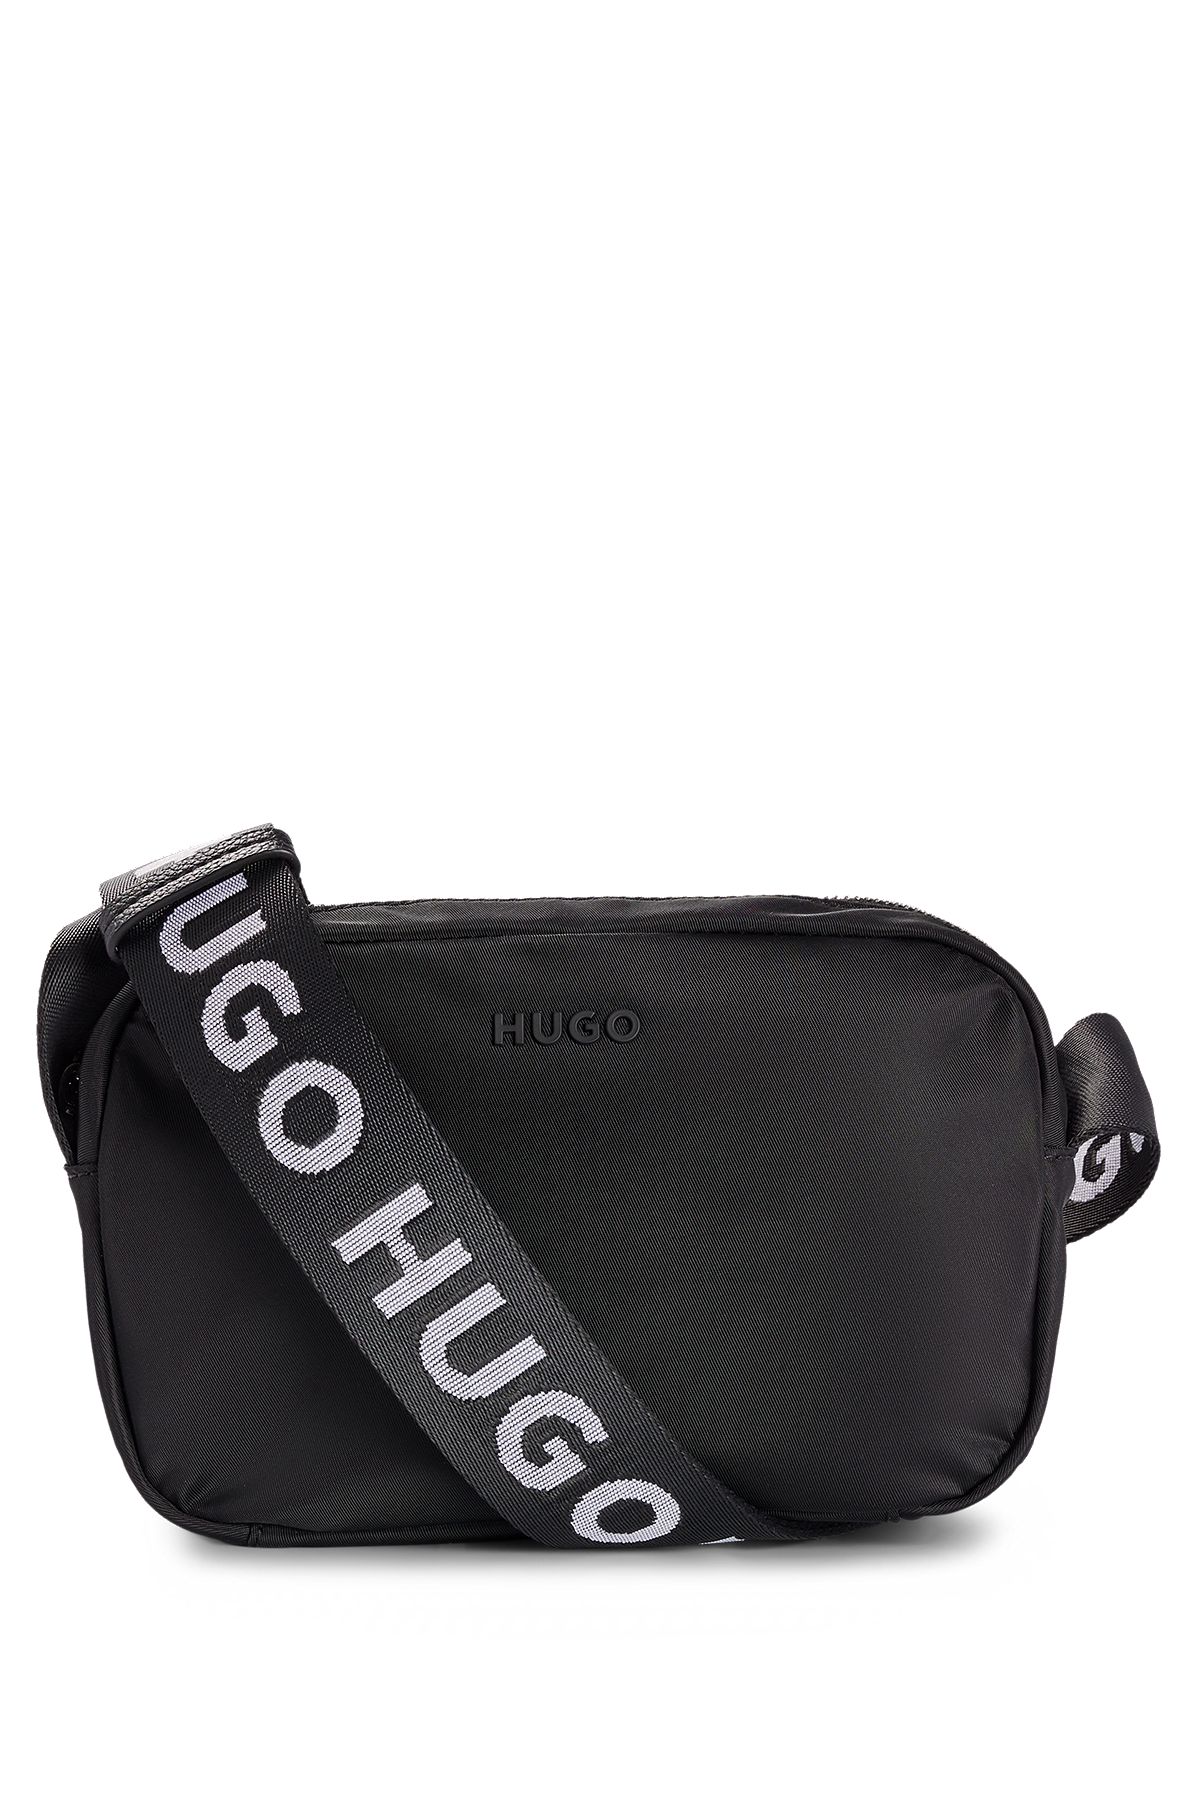 レディースショルダーバッグ | HUGO BOSS